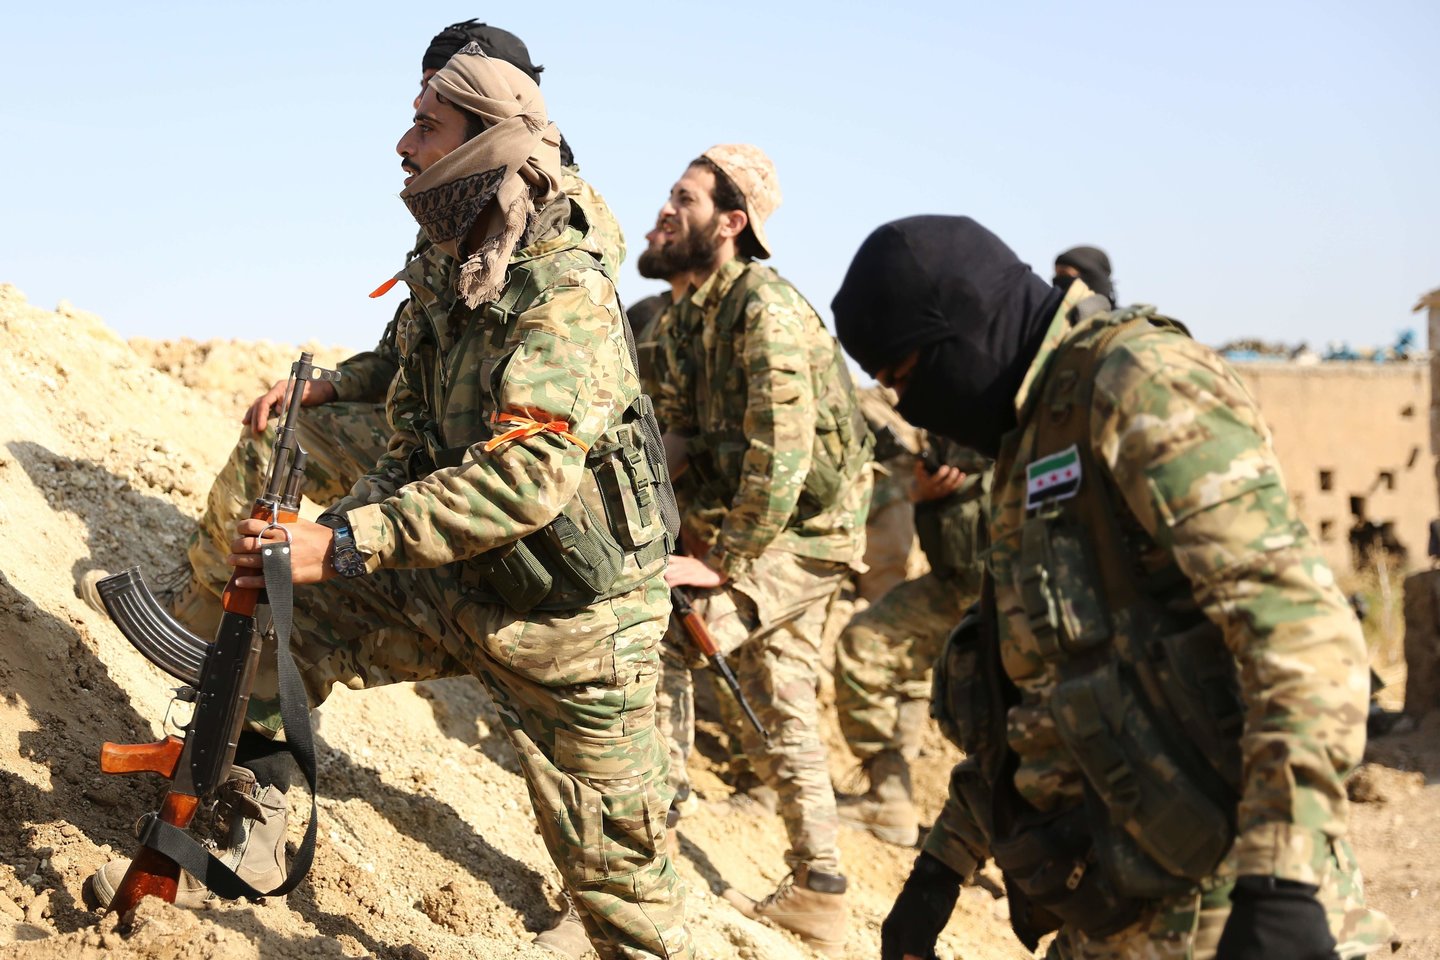 Turkijos užsienio reikalų ministras Mevlutas Cavusoglu pirmadienį pareiškė, kad jo šalis atakuos bet kokius kurdų kovotojus, pasilikusius Sirijos šiaurės rytuose prie sienos su Turkija, kai sukaks laikotarpis, per kurį jie turėjo atsitraukti.<br>AFP/